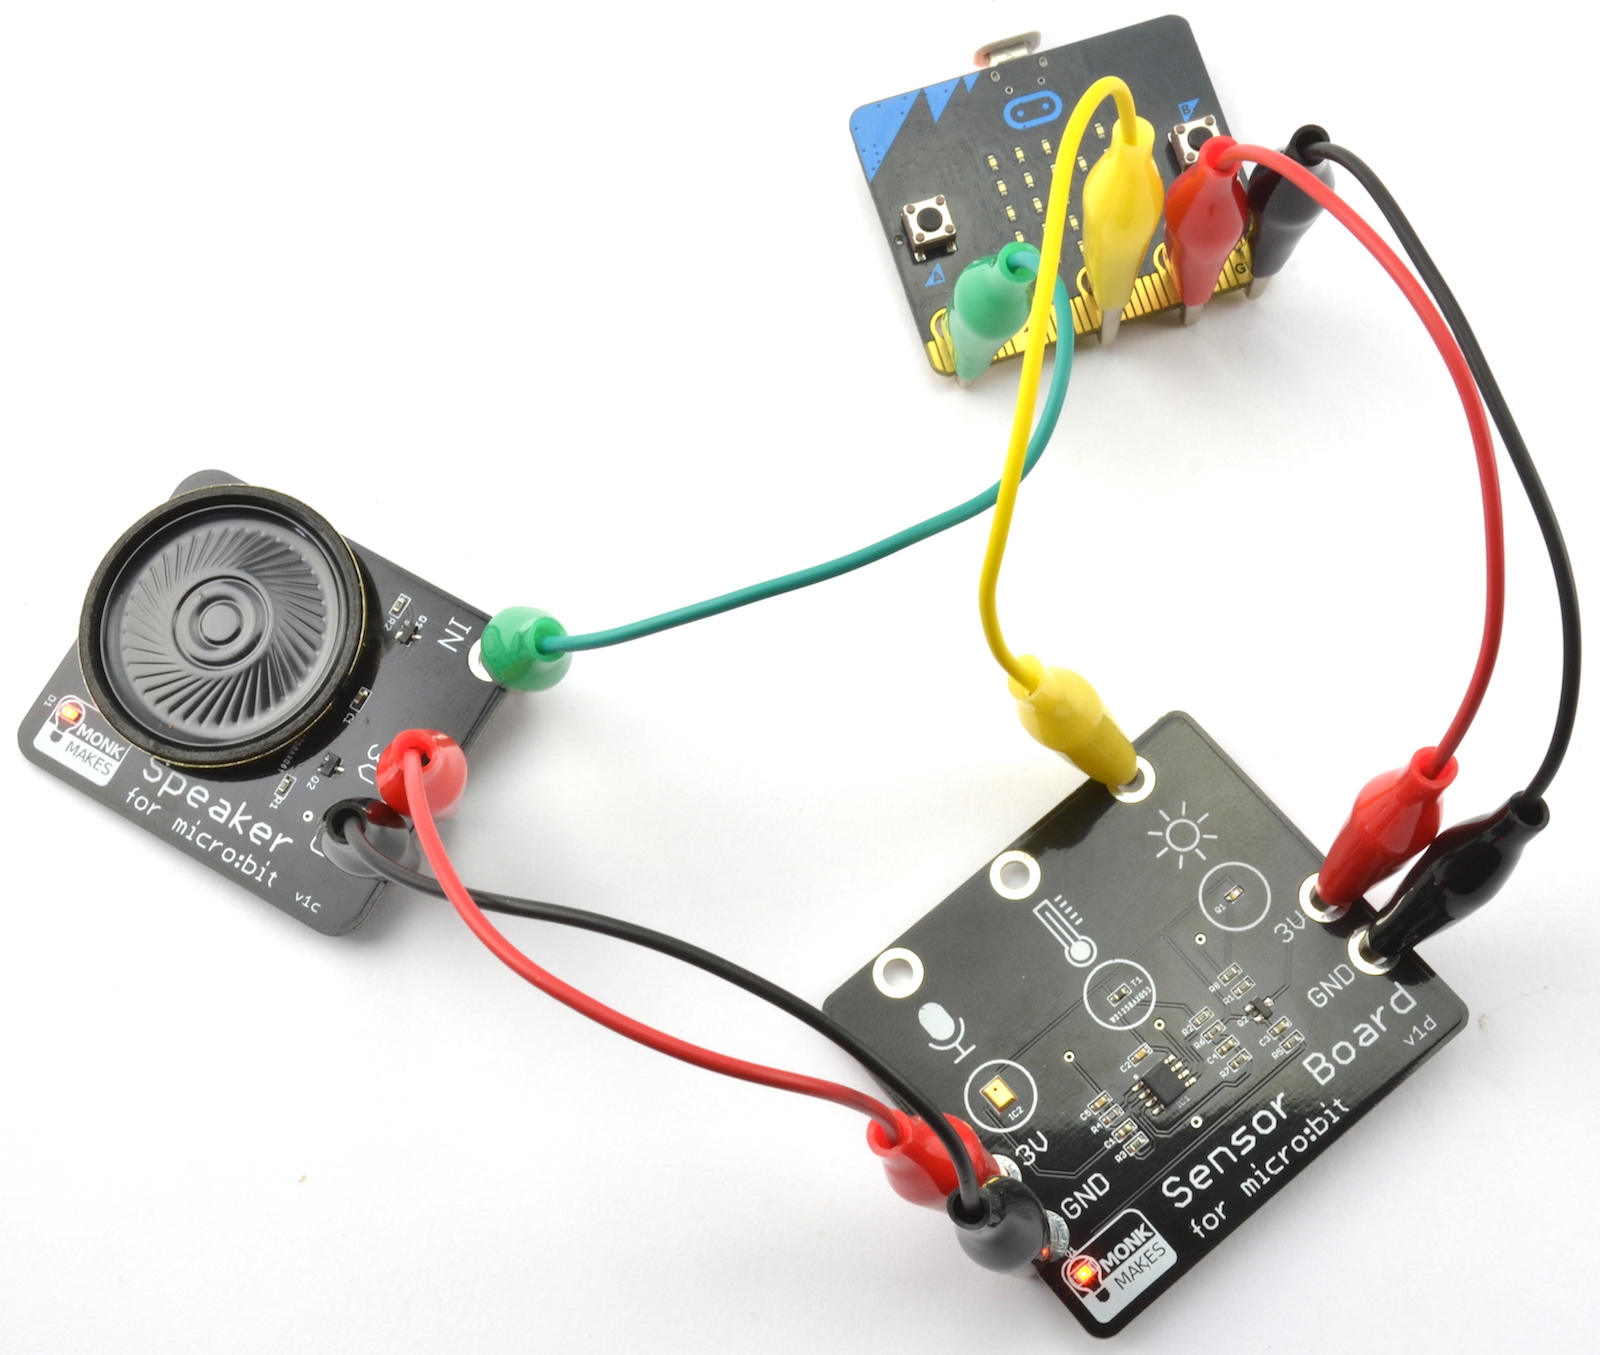 Kit de Iniciación a la Electrónica para micro:bit